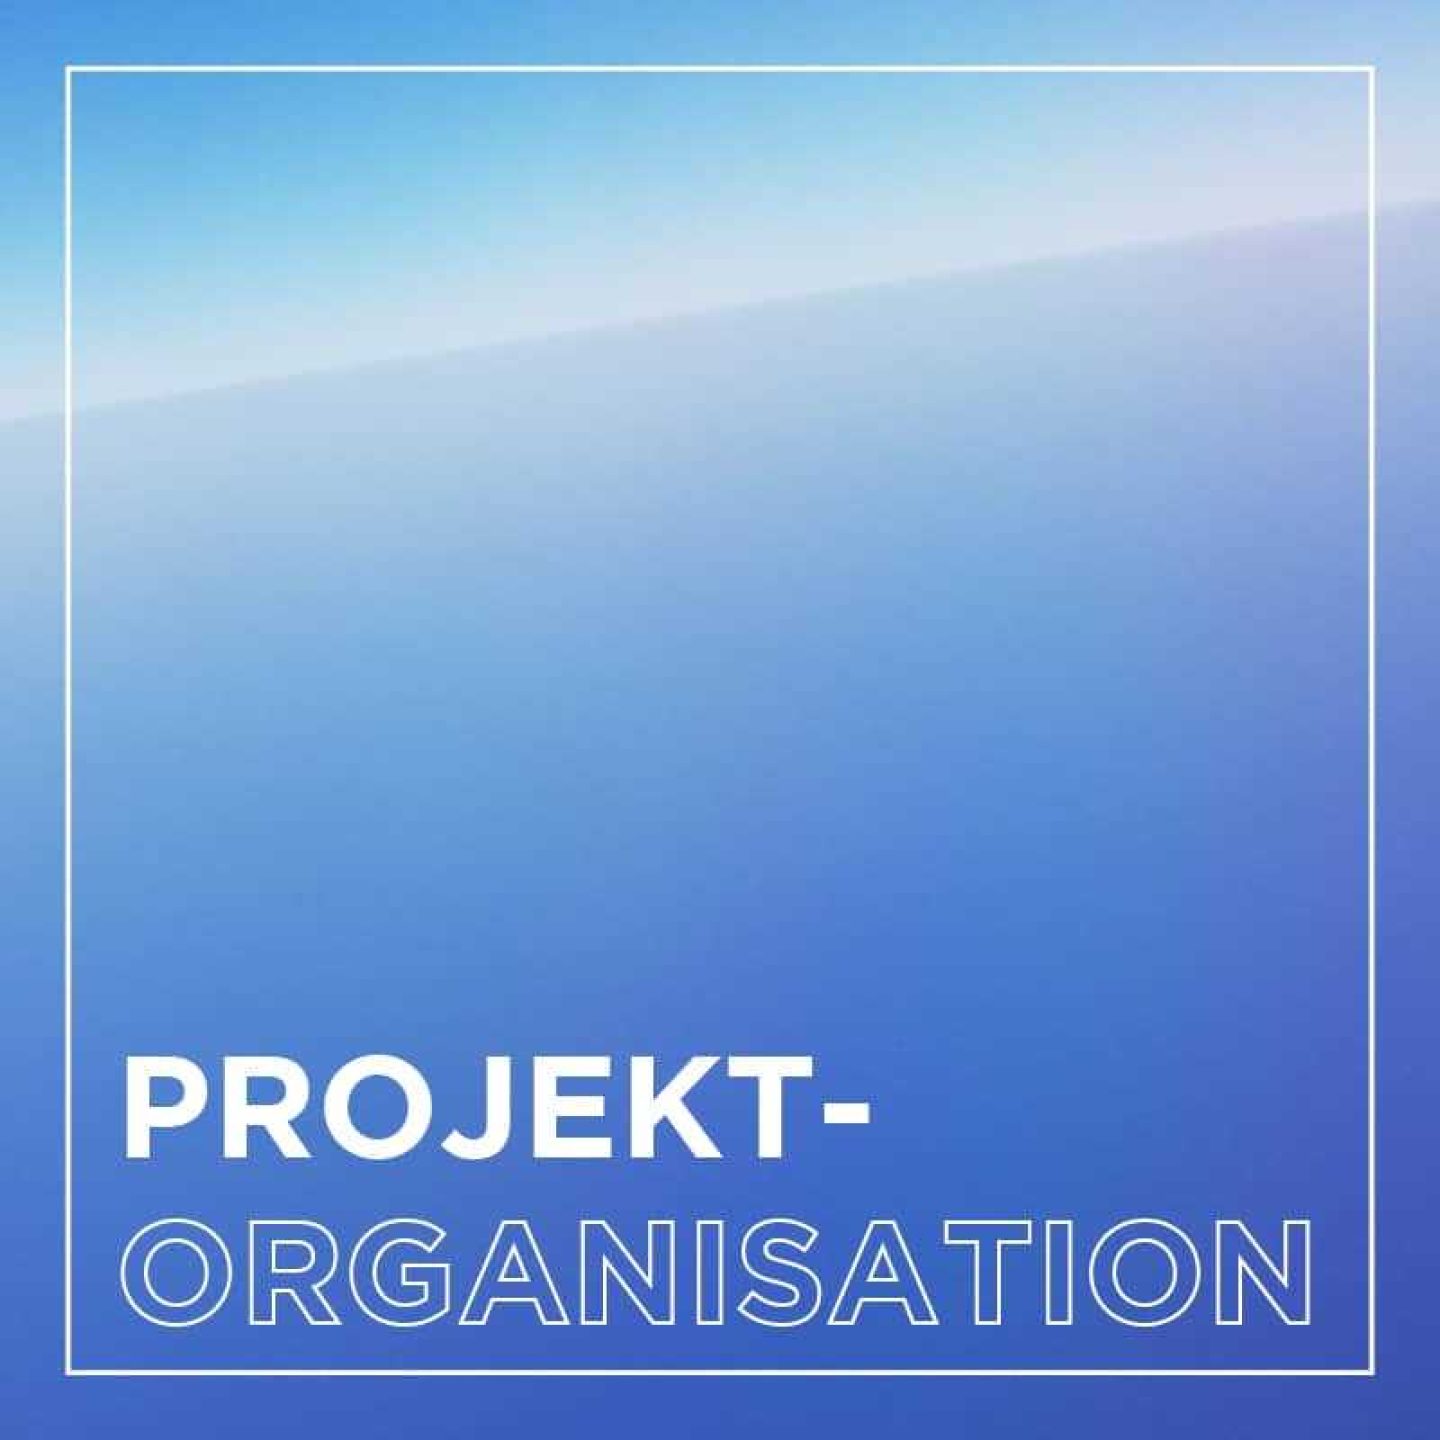 Kachel implementierung projektorganisation